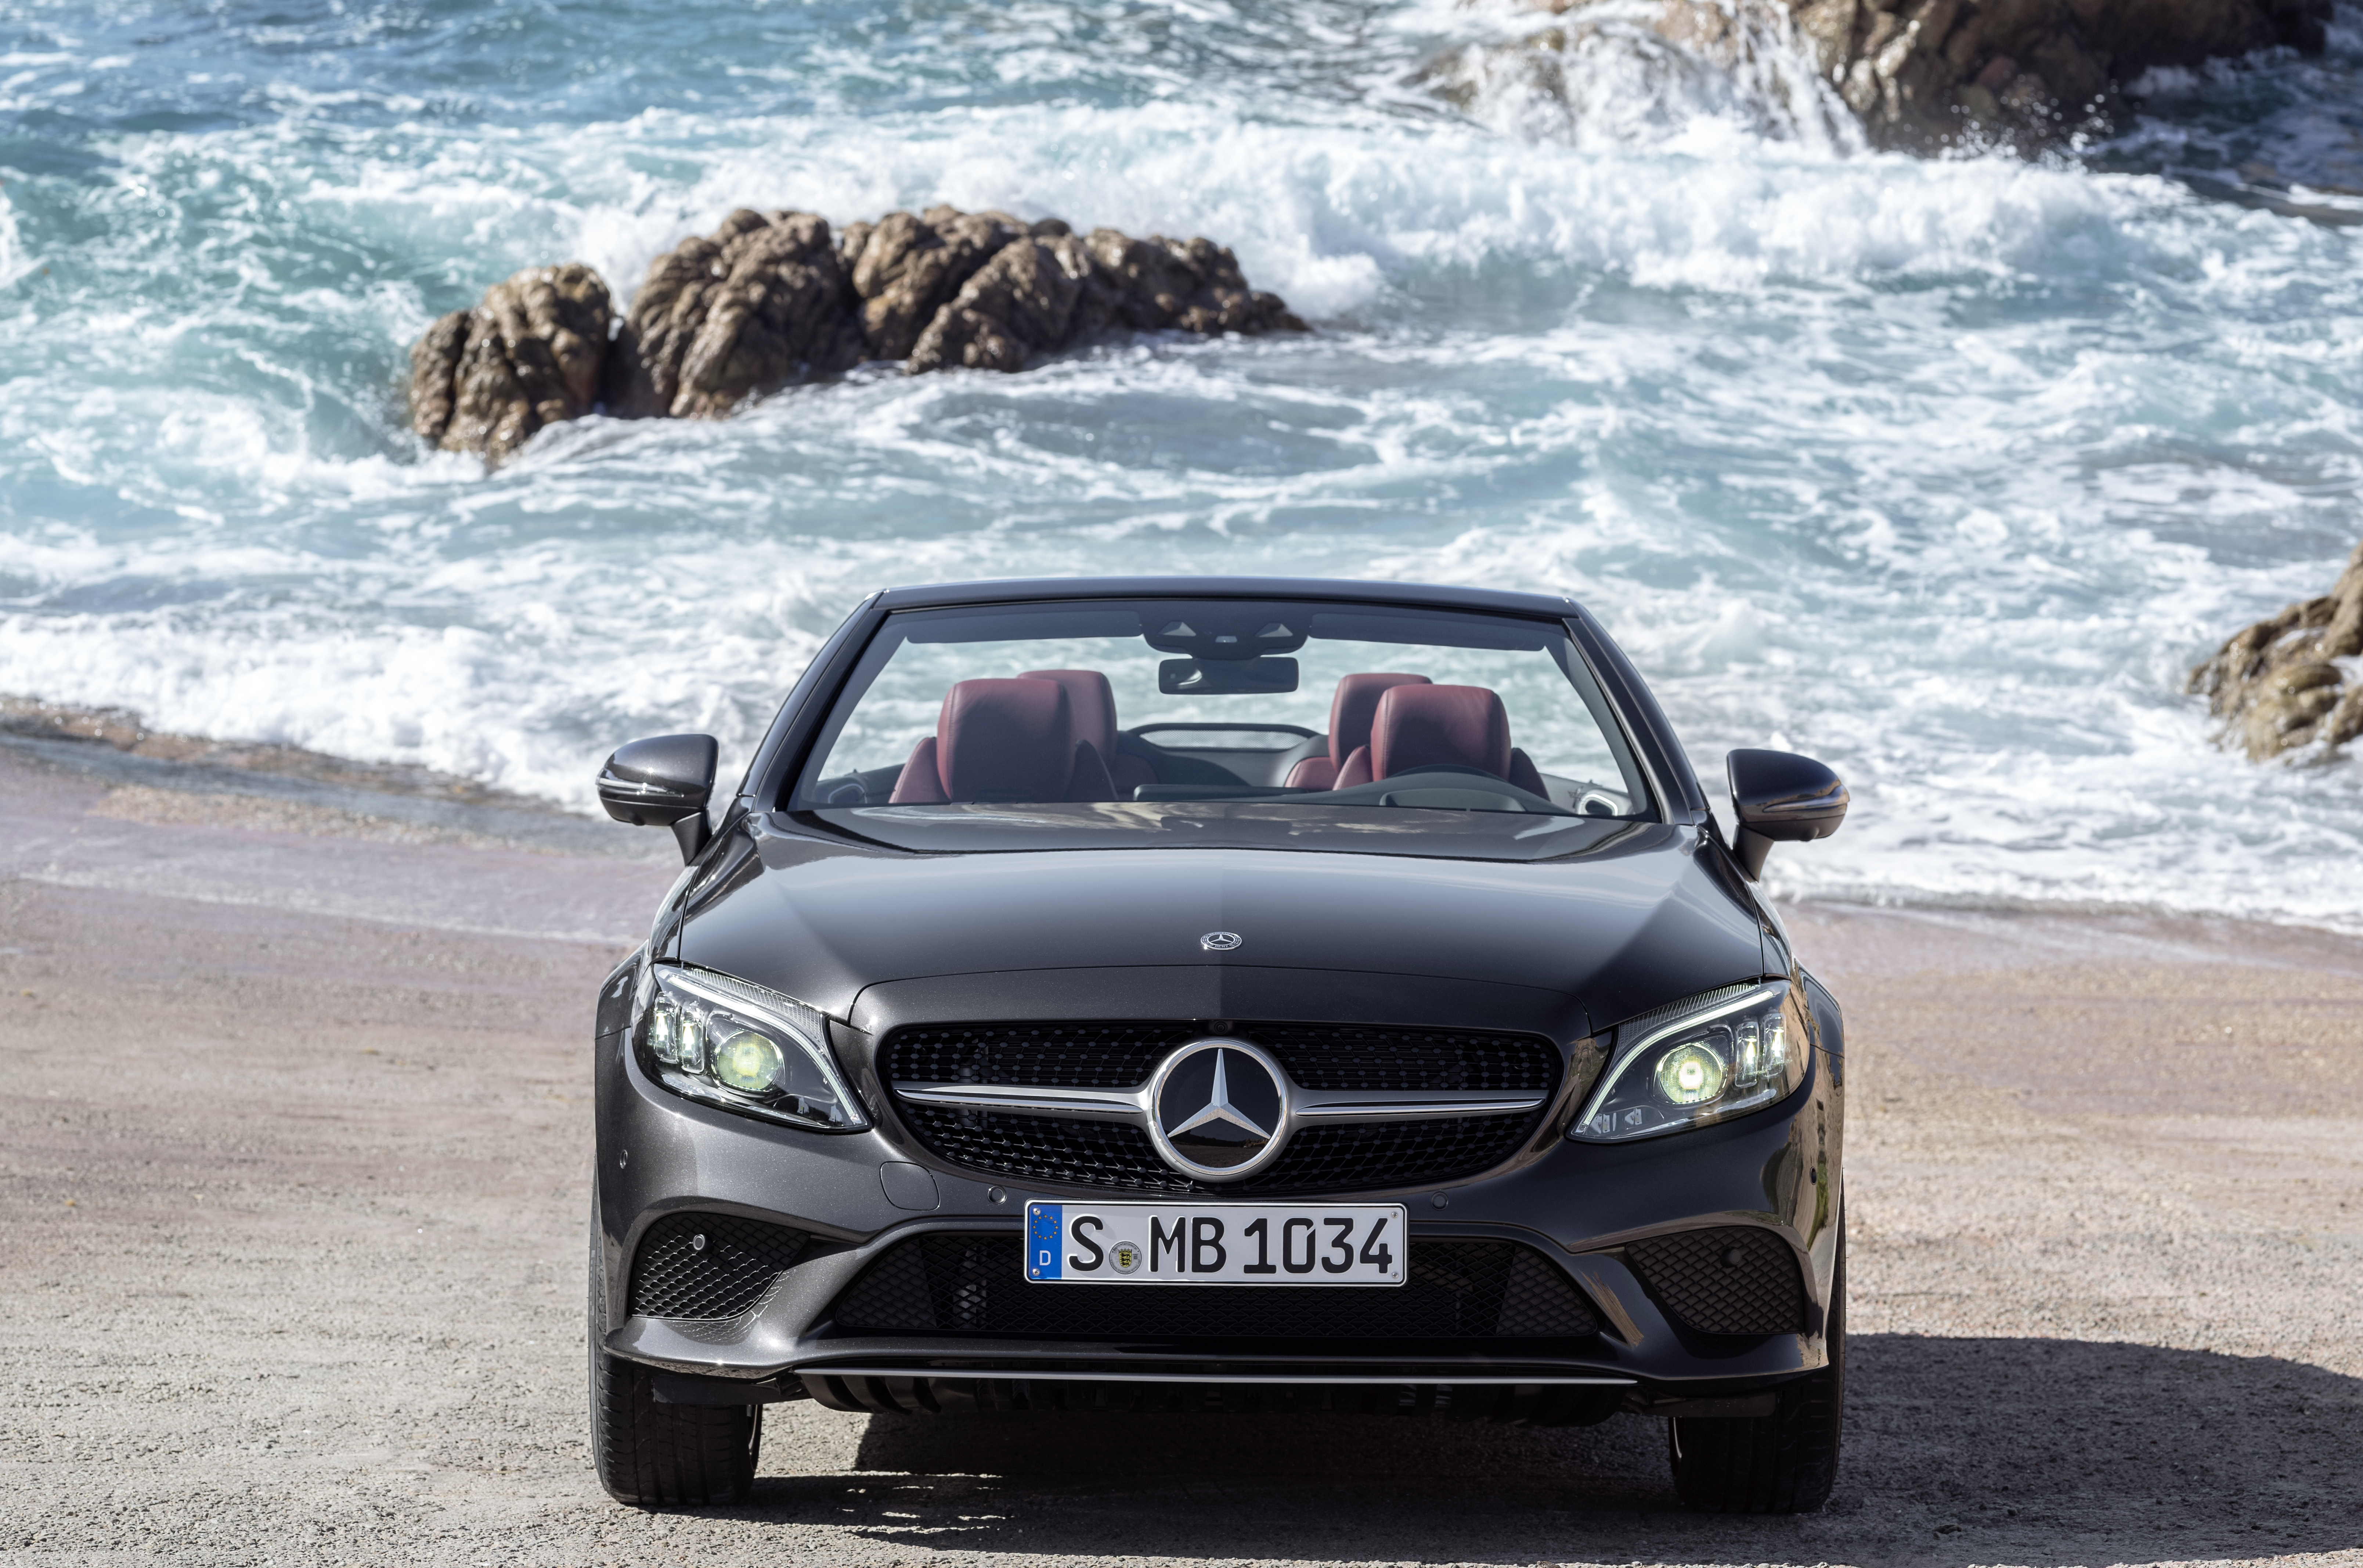 Avis Prestige Collection 2019: arriva l’alto di gamma Mercedes-Benz